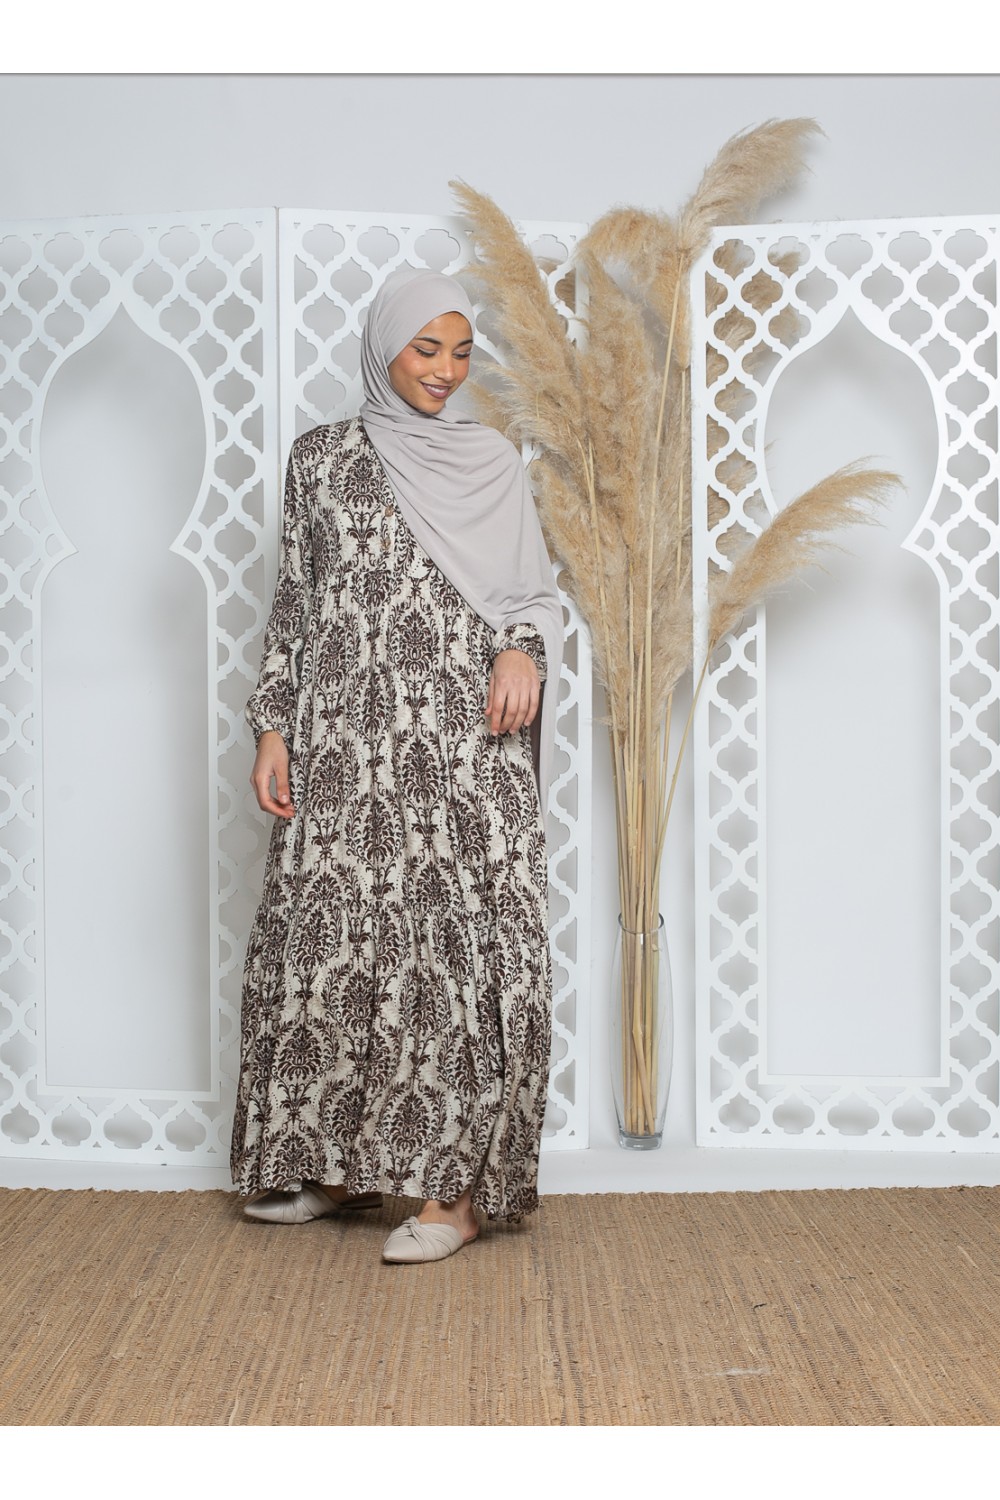 Robe bohème viscose imprimé collection printemps été. Boutique prêt à porter pour femme musulmane.